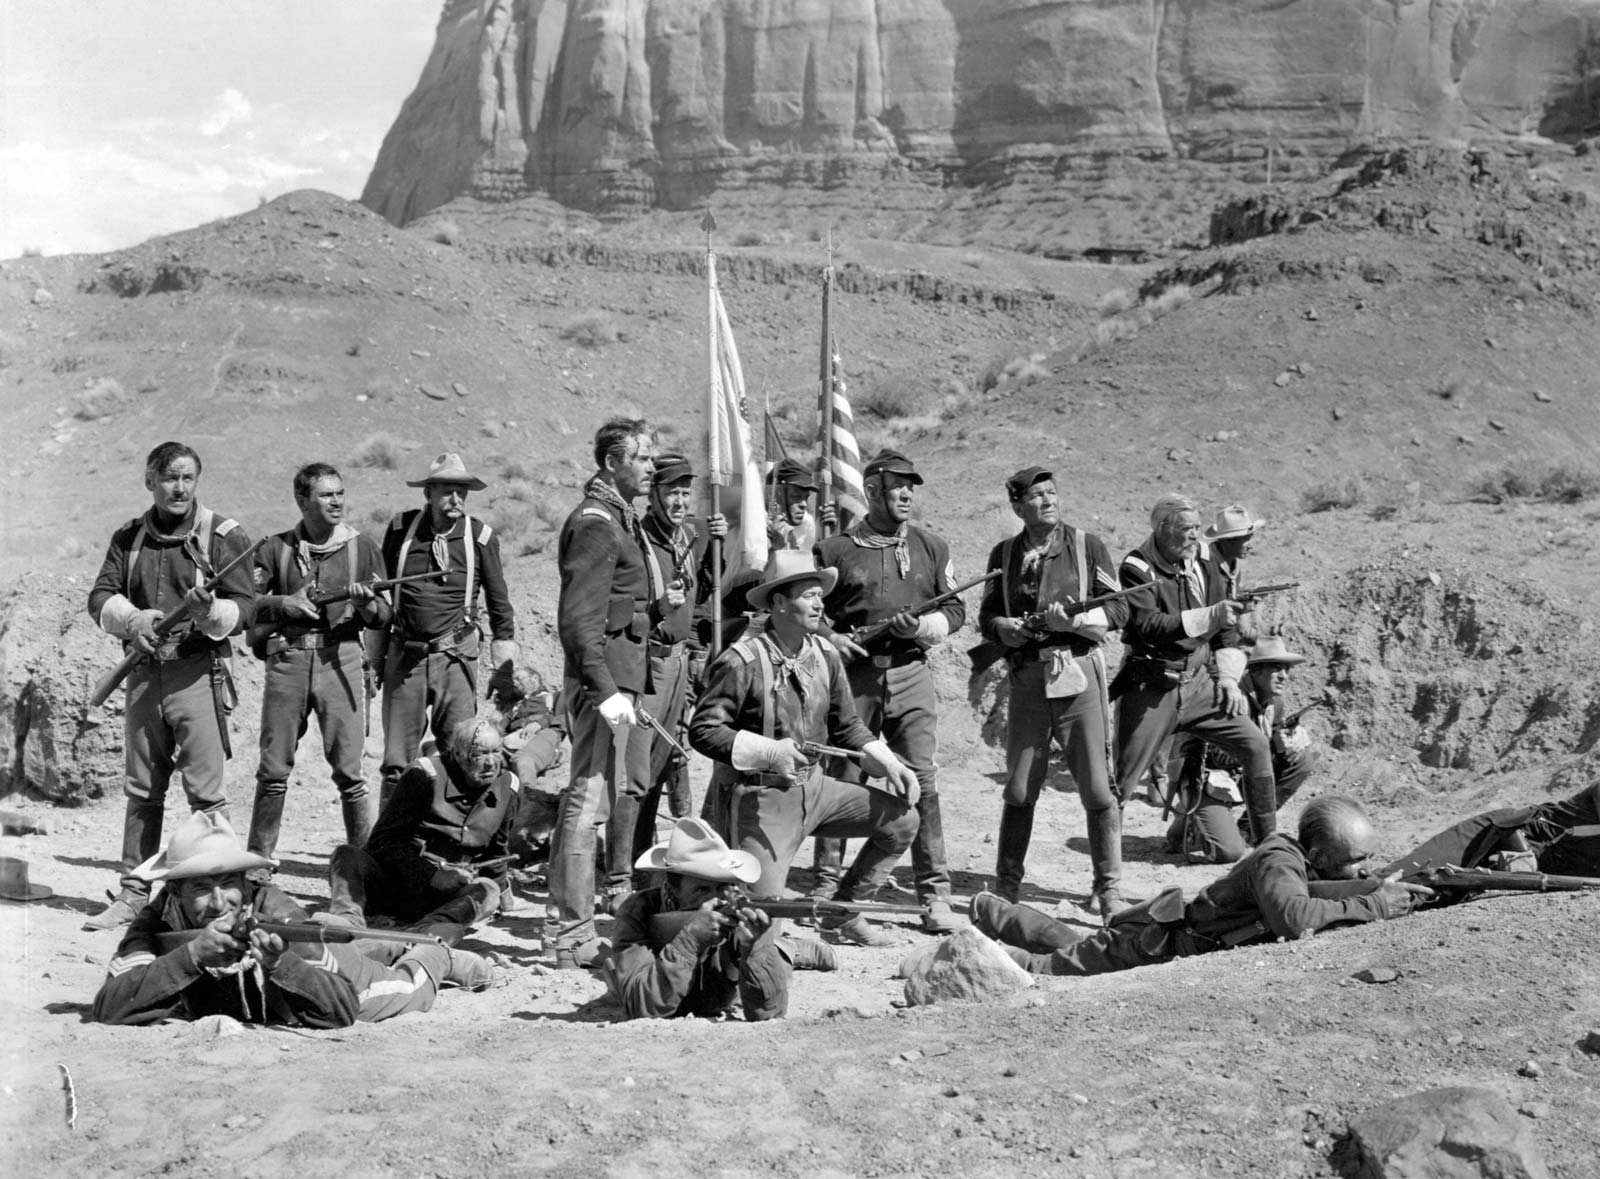 فیلم Fort Apache و سربازان در کنار پرچم میان دشت و کنار کوه